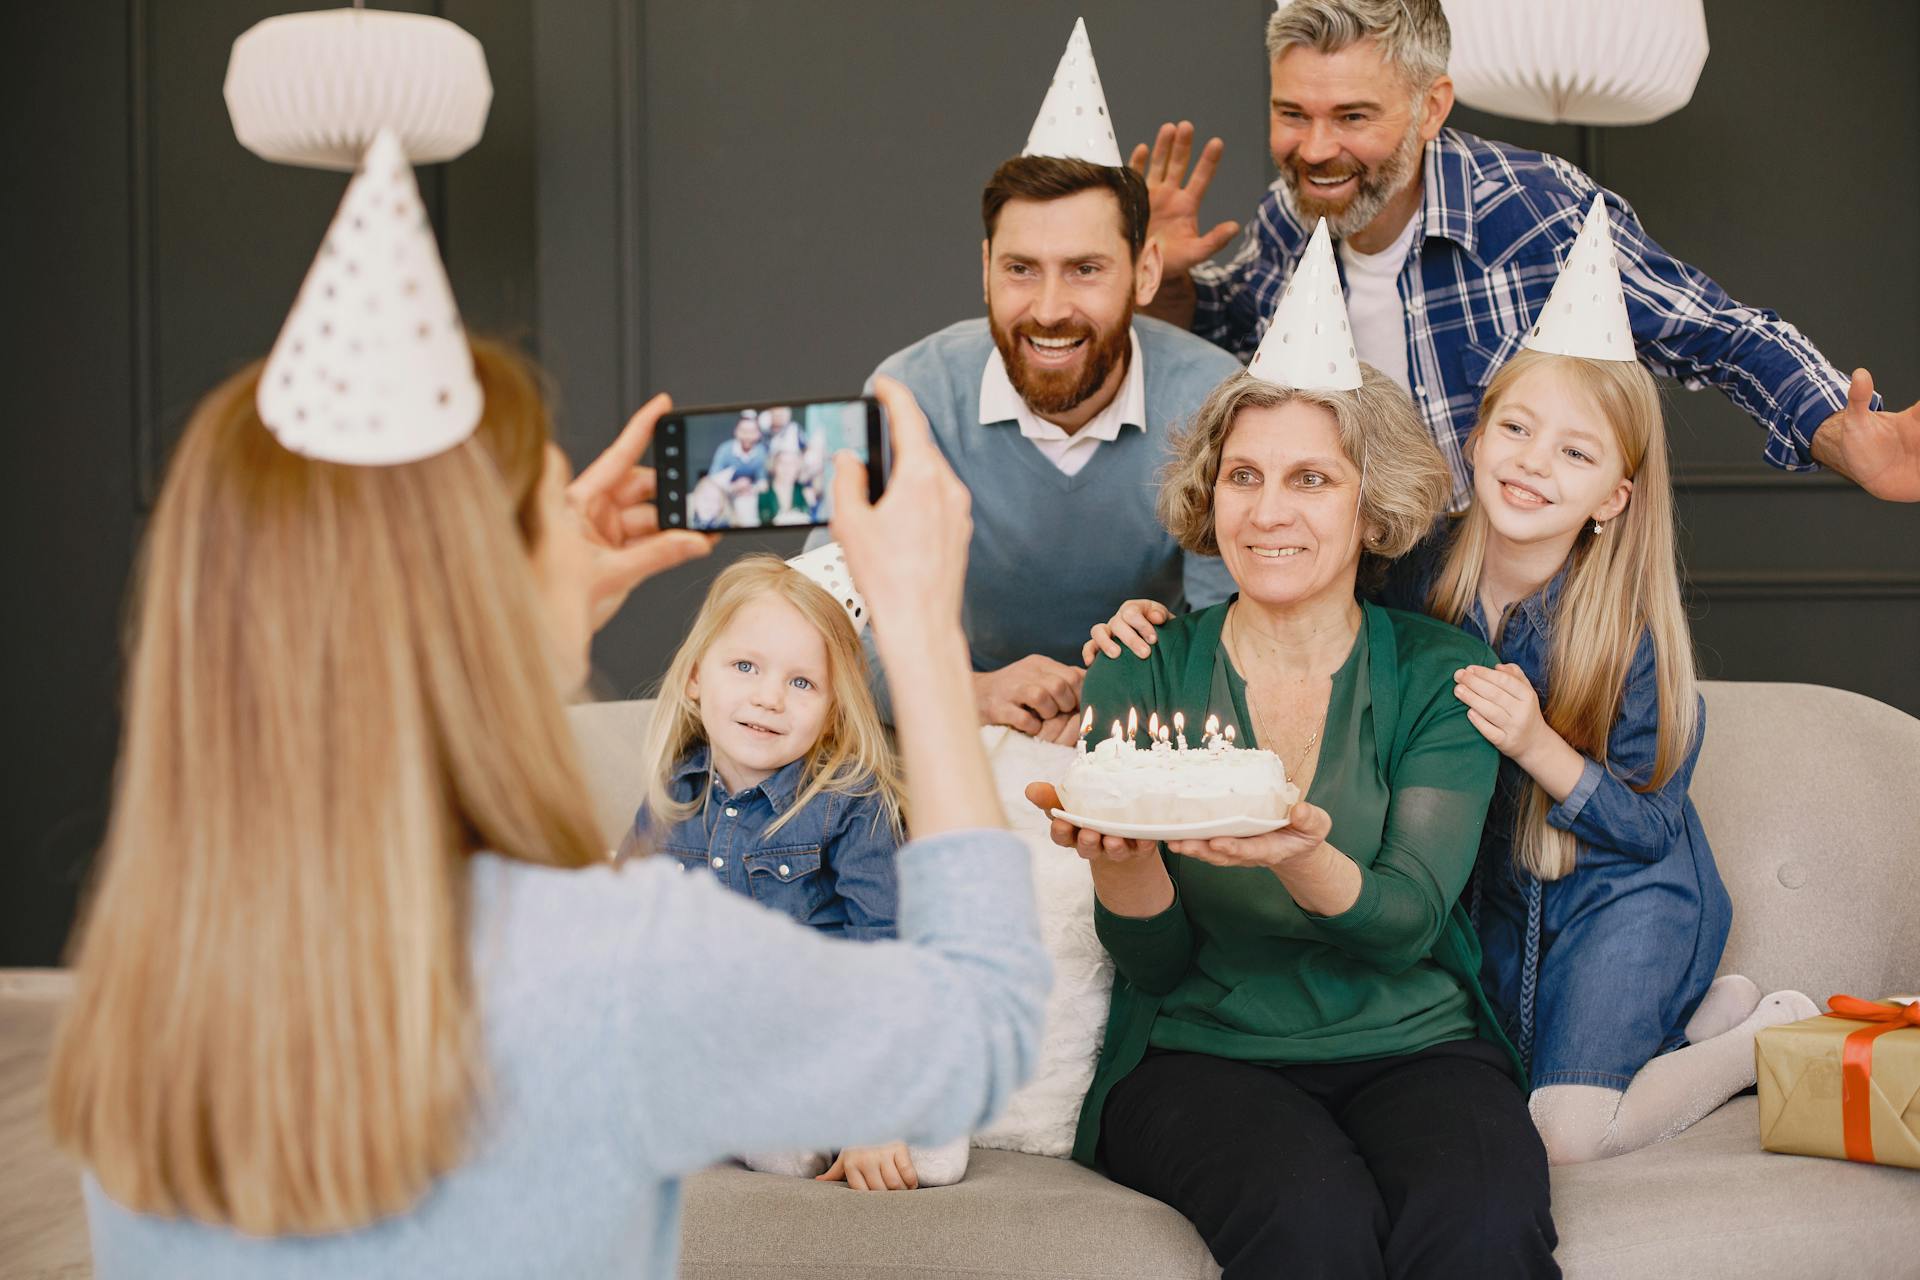 Mujer fotografiando a su familia en un cumpleaños | Fuente: Pexels